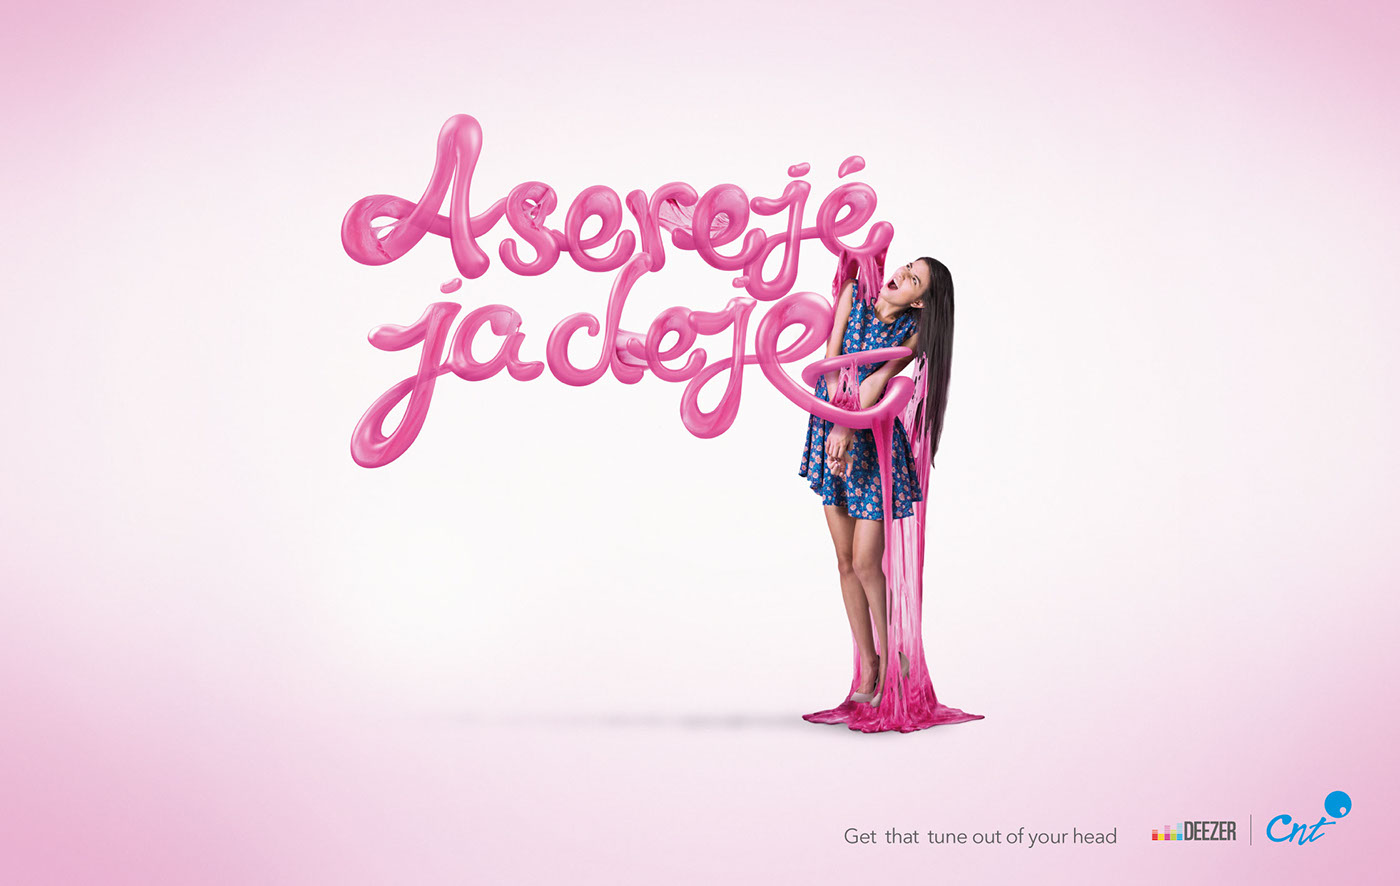 cnt deezer 3D music Chicle bubble gum Advertising  publicidad retouch